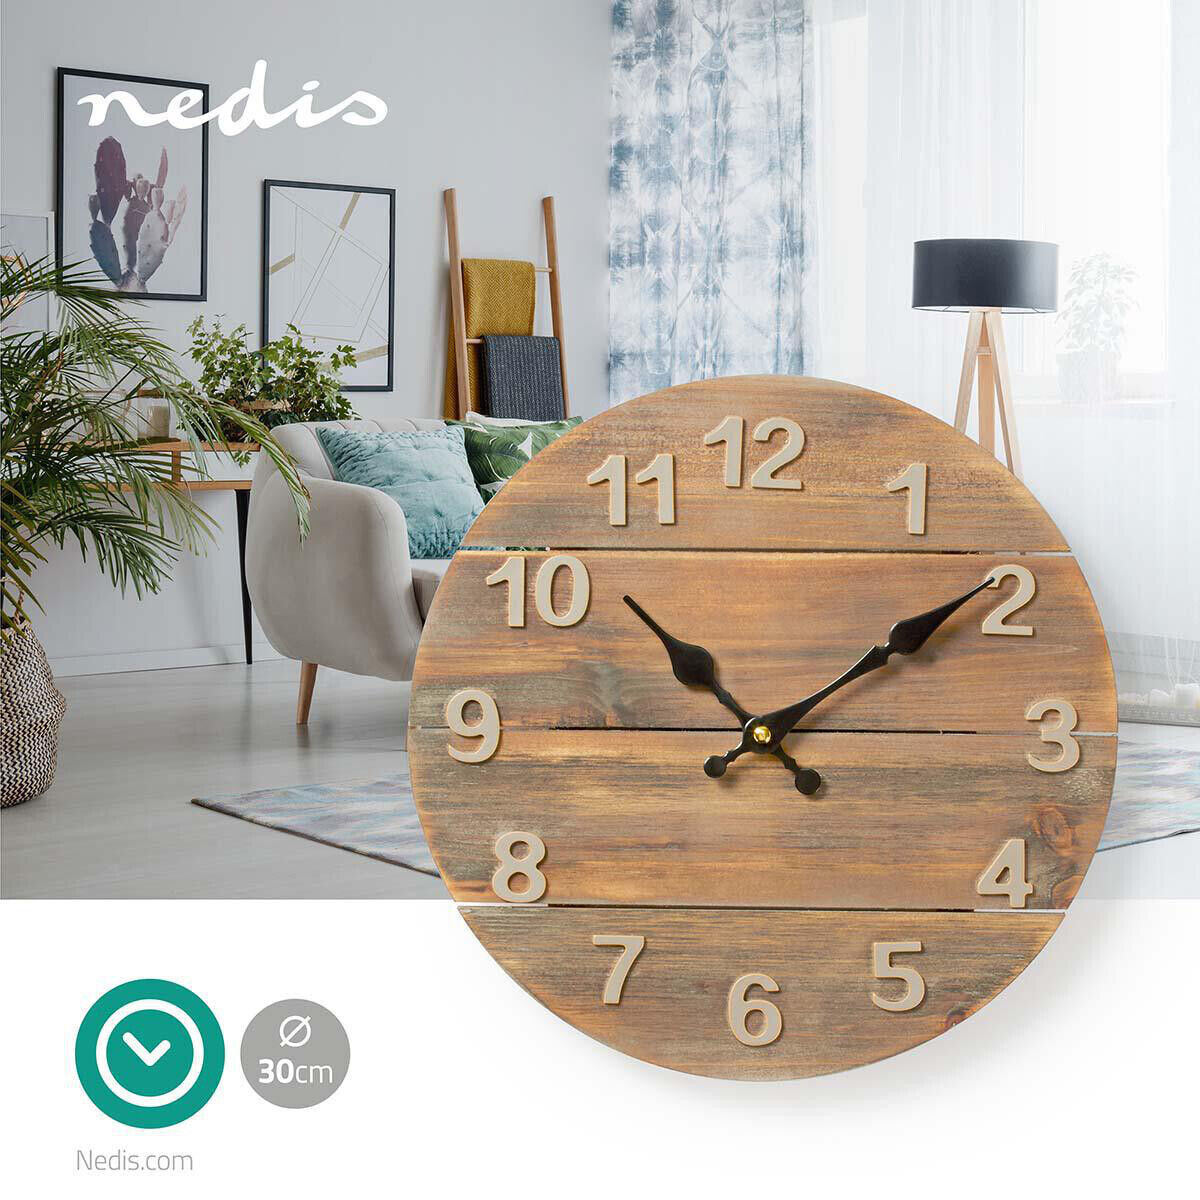 Nedis 30 Cm Wanduhr Aus Holz Design Retro Rustikal Große Zahlen Wohnzimmer  Uhr inside Wanduhr Wohnzimmer Holz